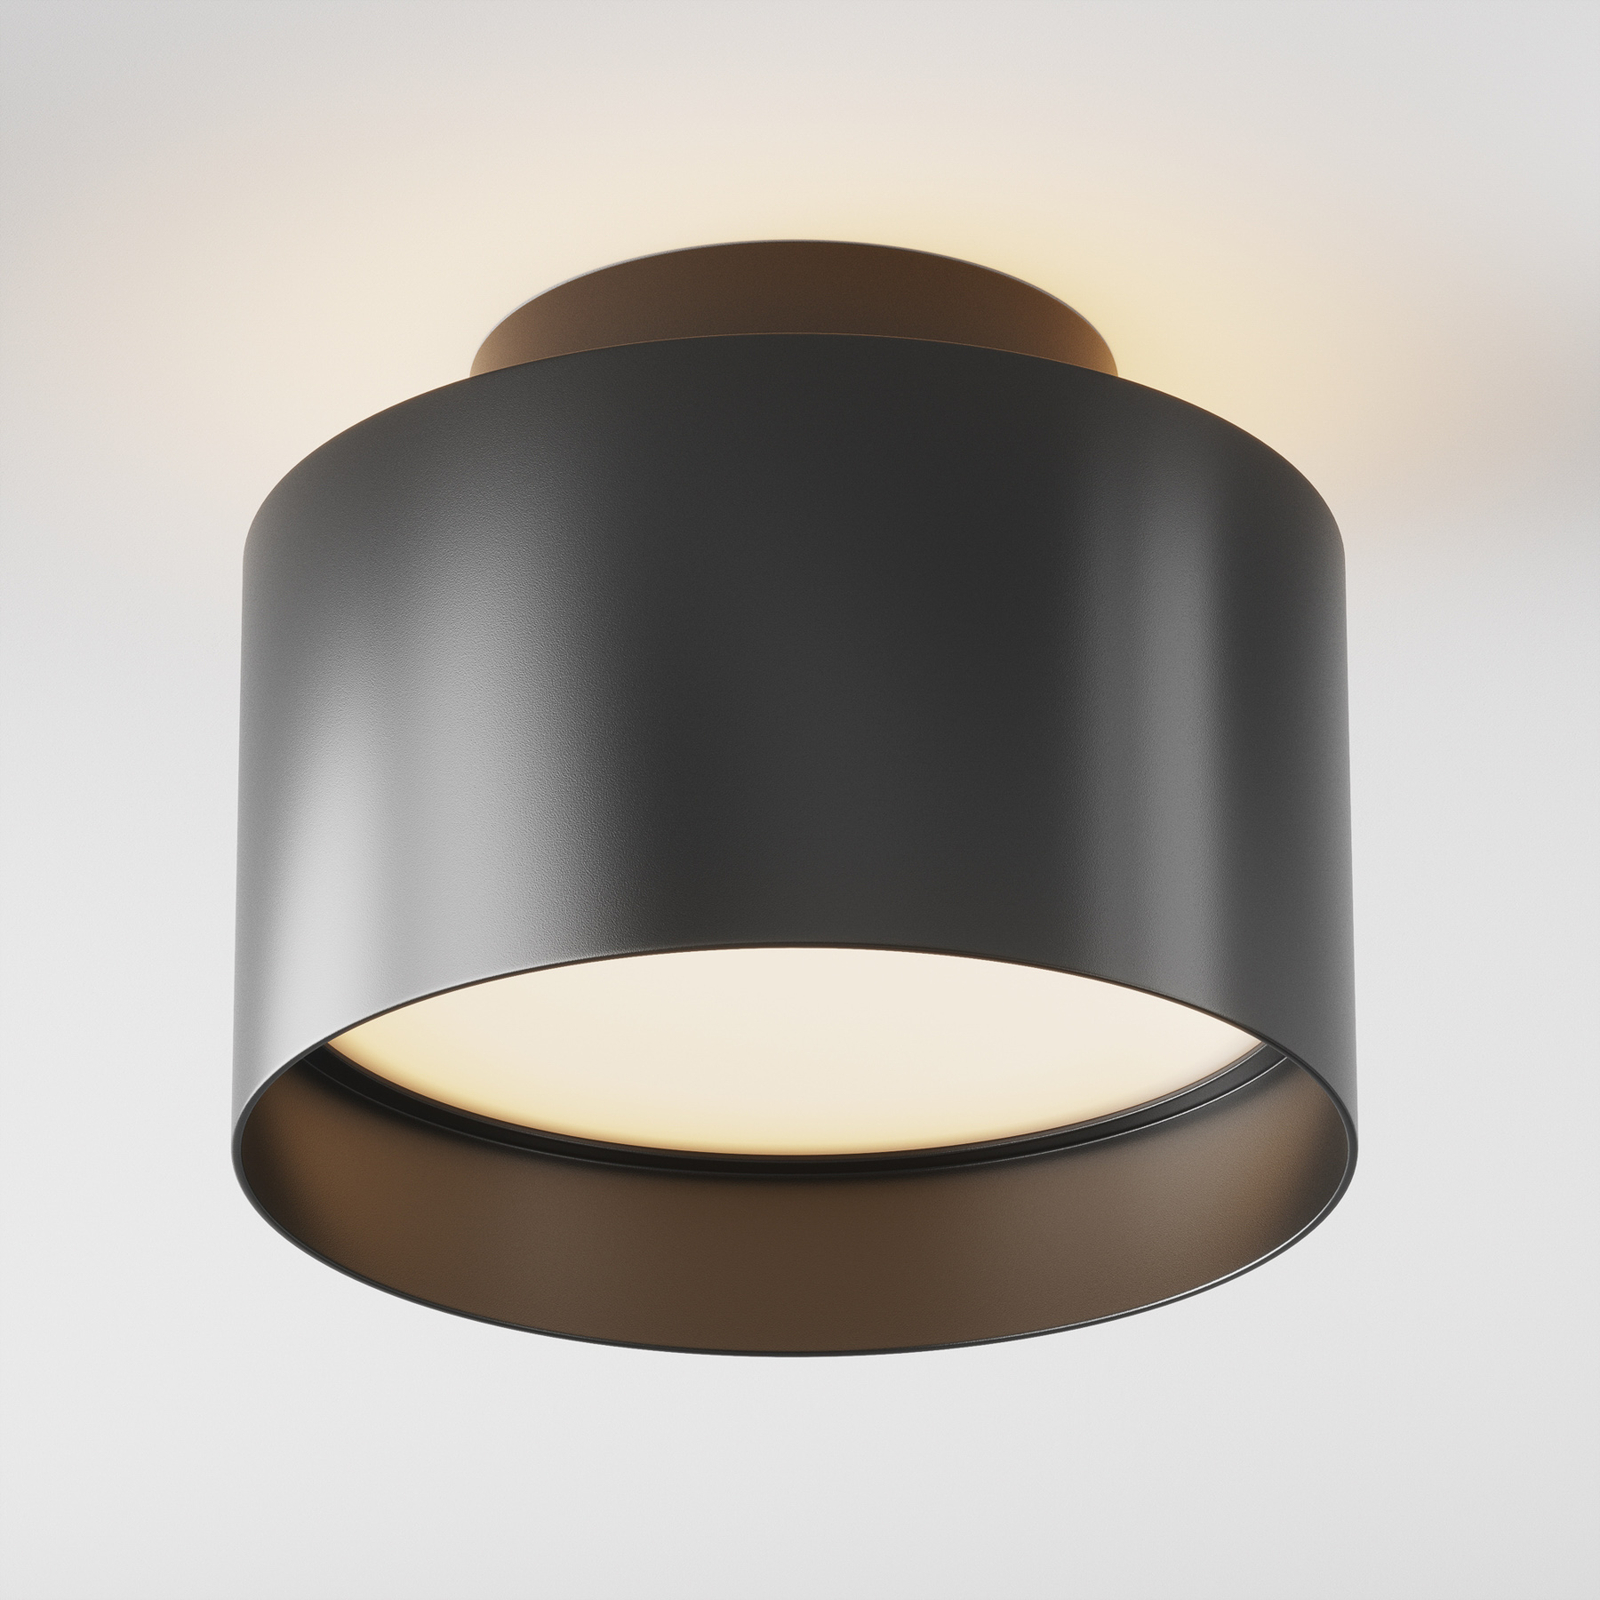 Maytoni Planet LED ceiling light, Ø 12 cm, black